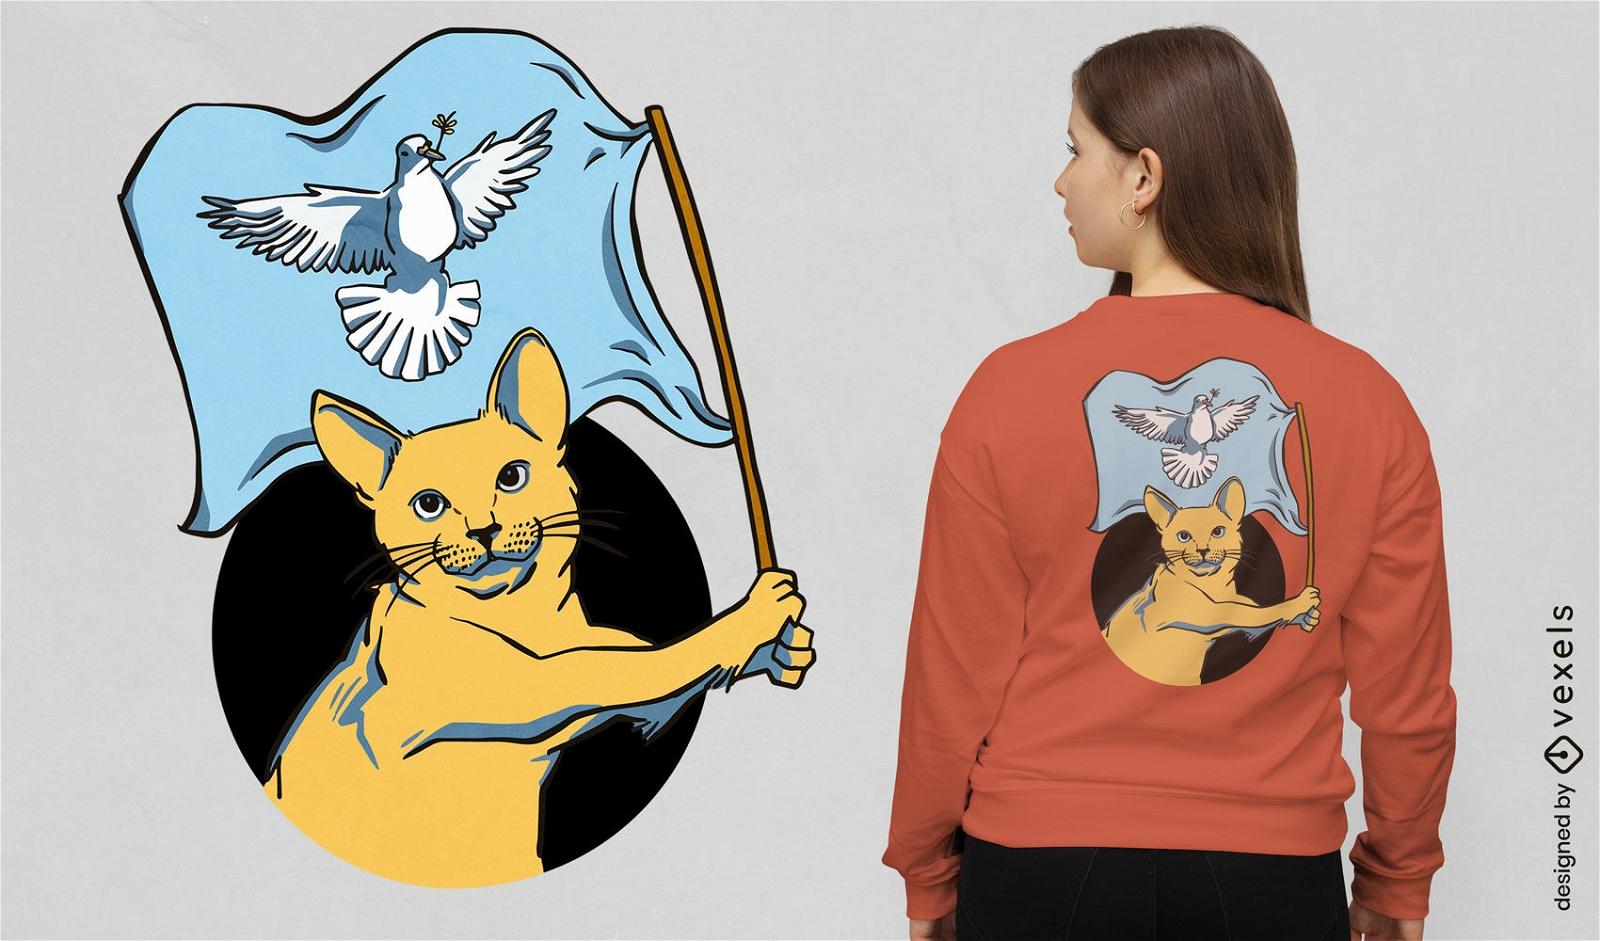 Gato animal con dise?o de camiseta de bandera de paz.